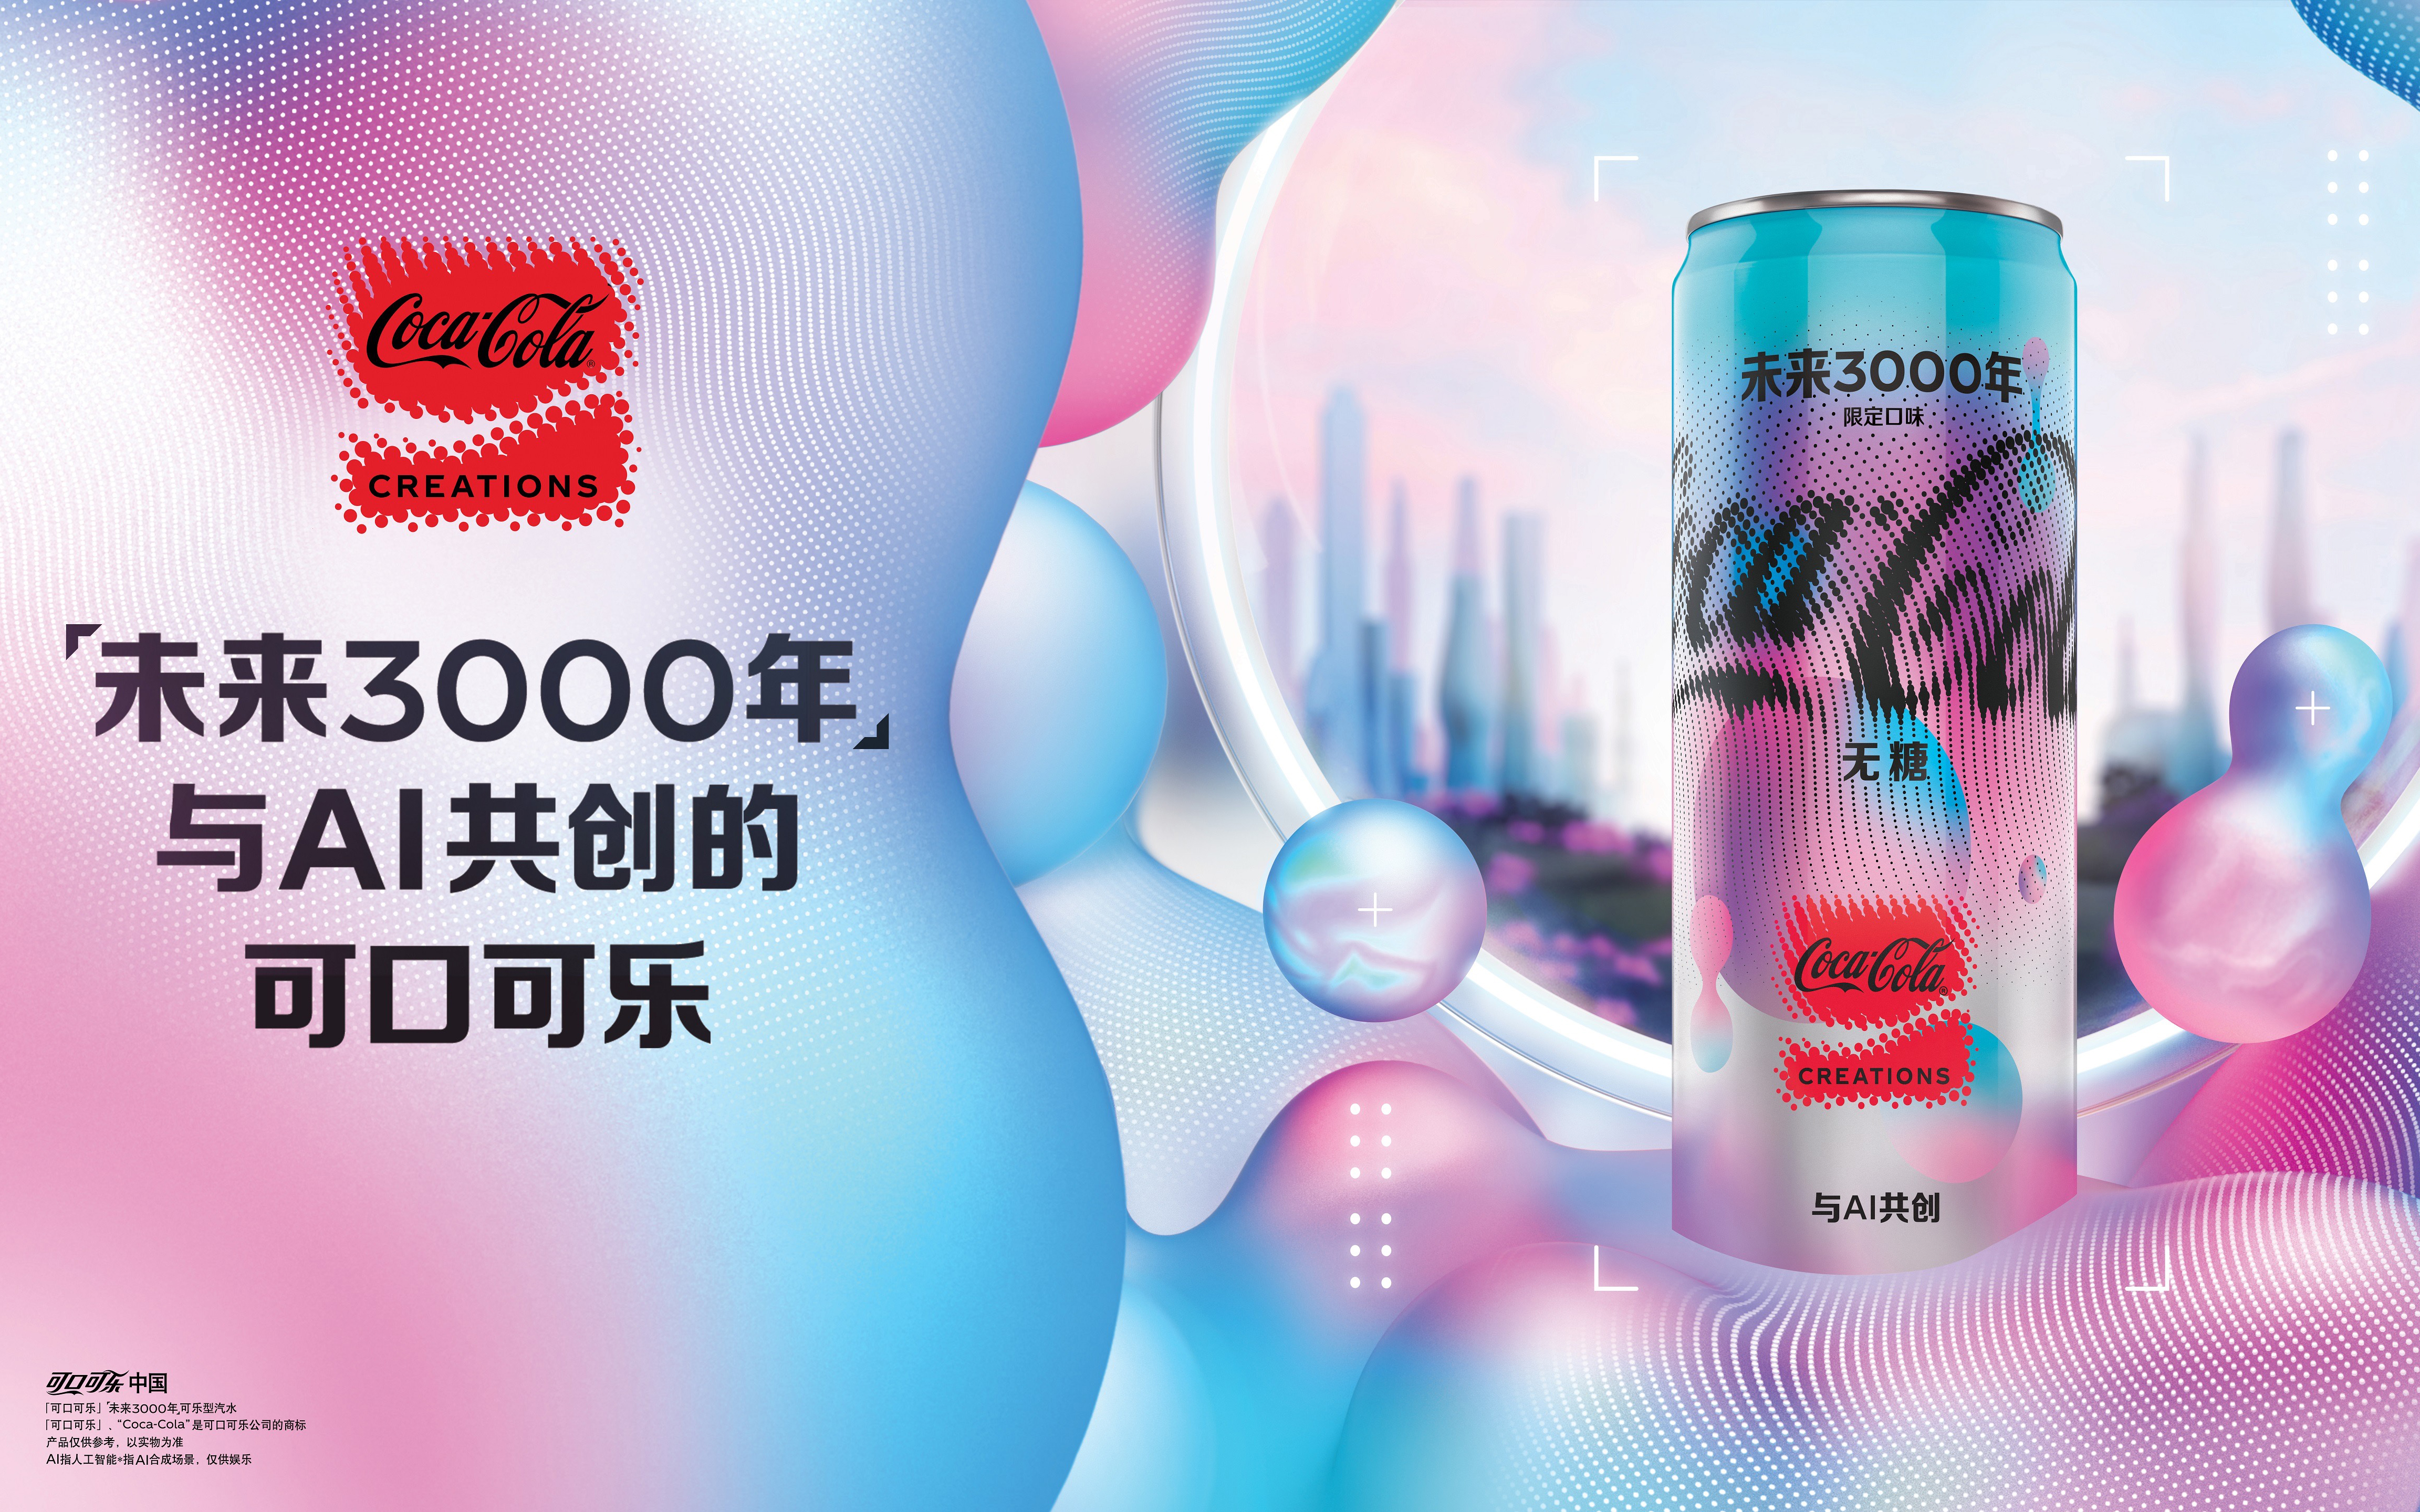 可口可乐推出与 AI 合作的限定产品「未来3000年」